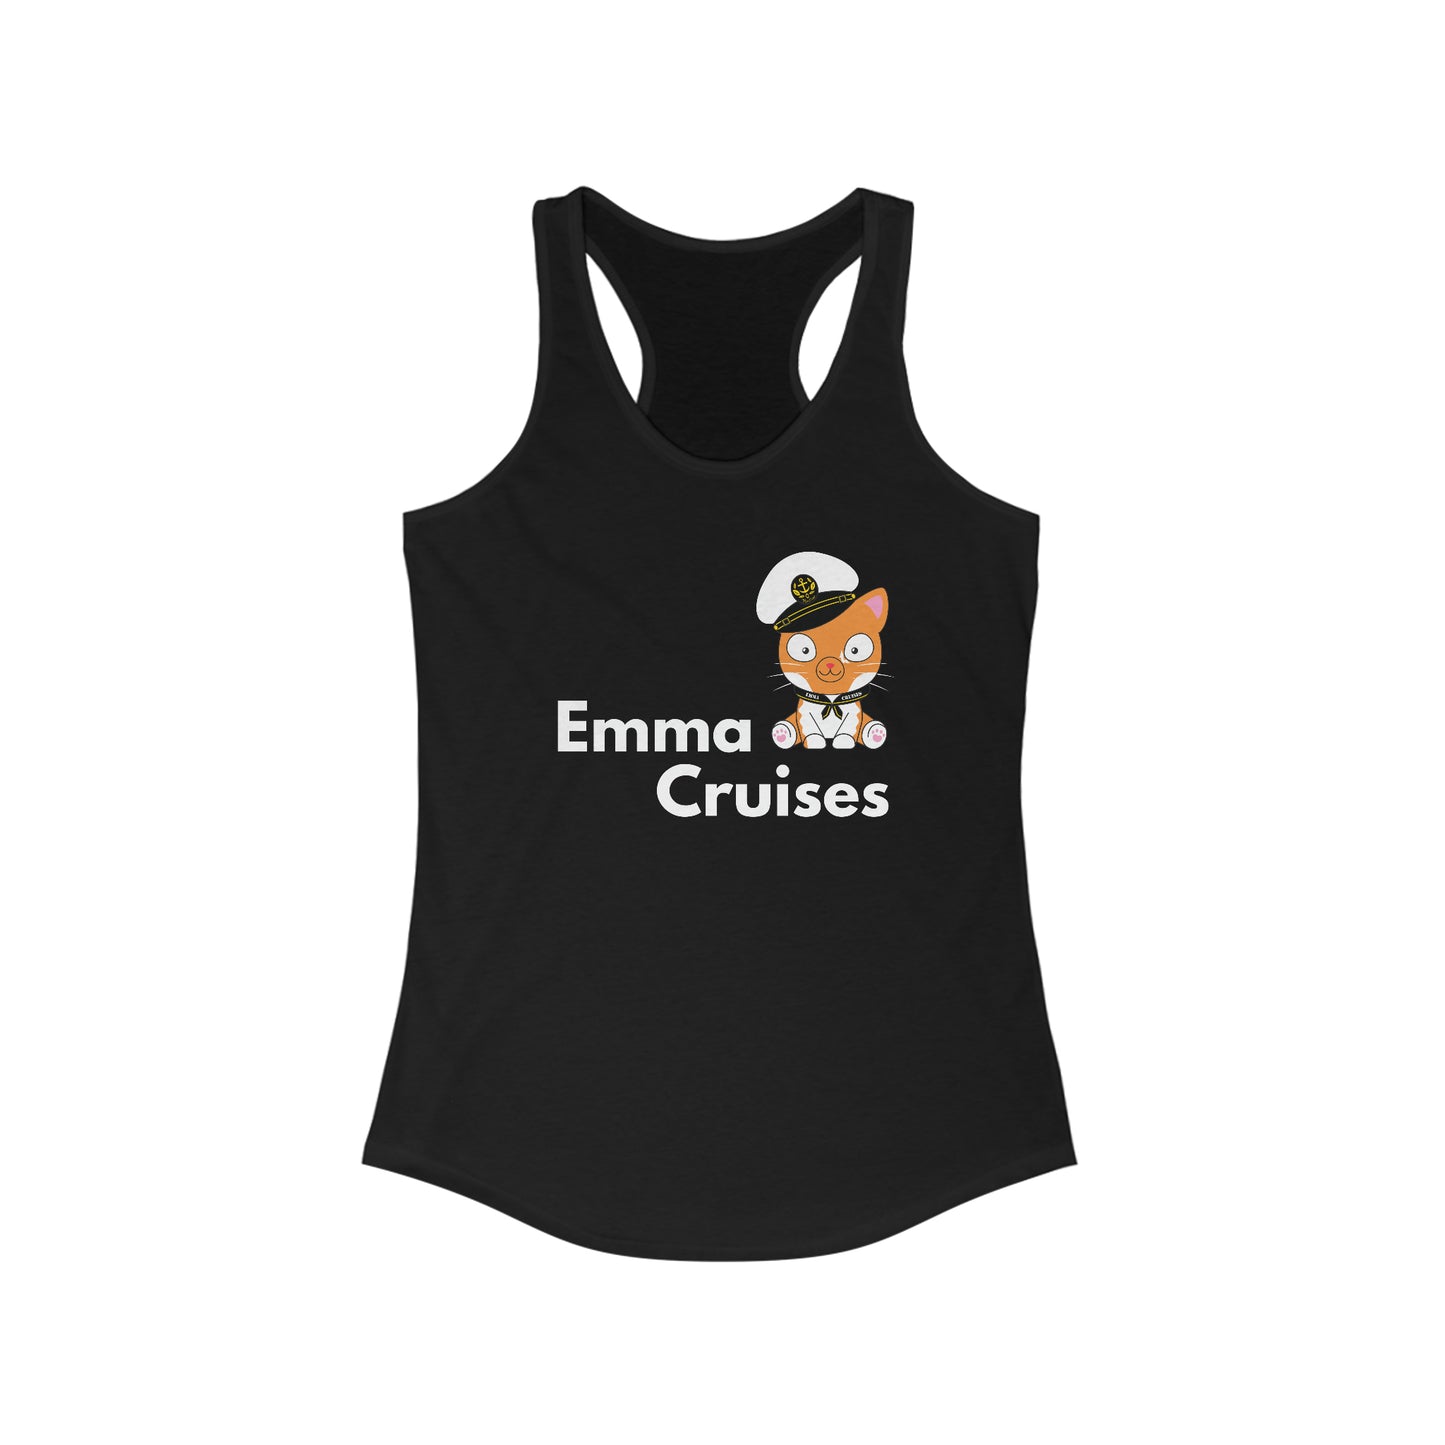 Emma Cruceros - Camiseta sin mangas 